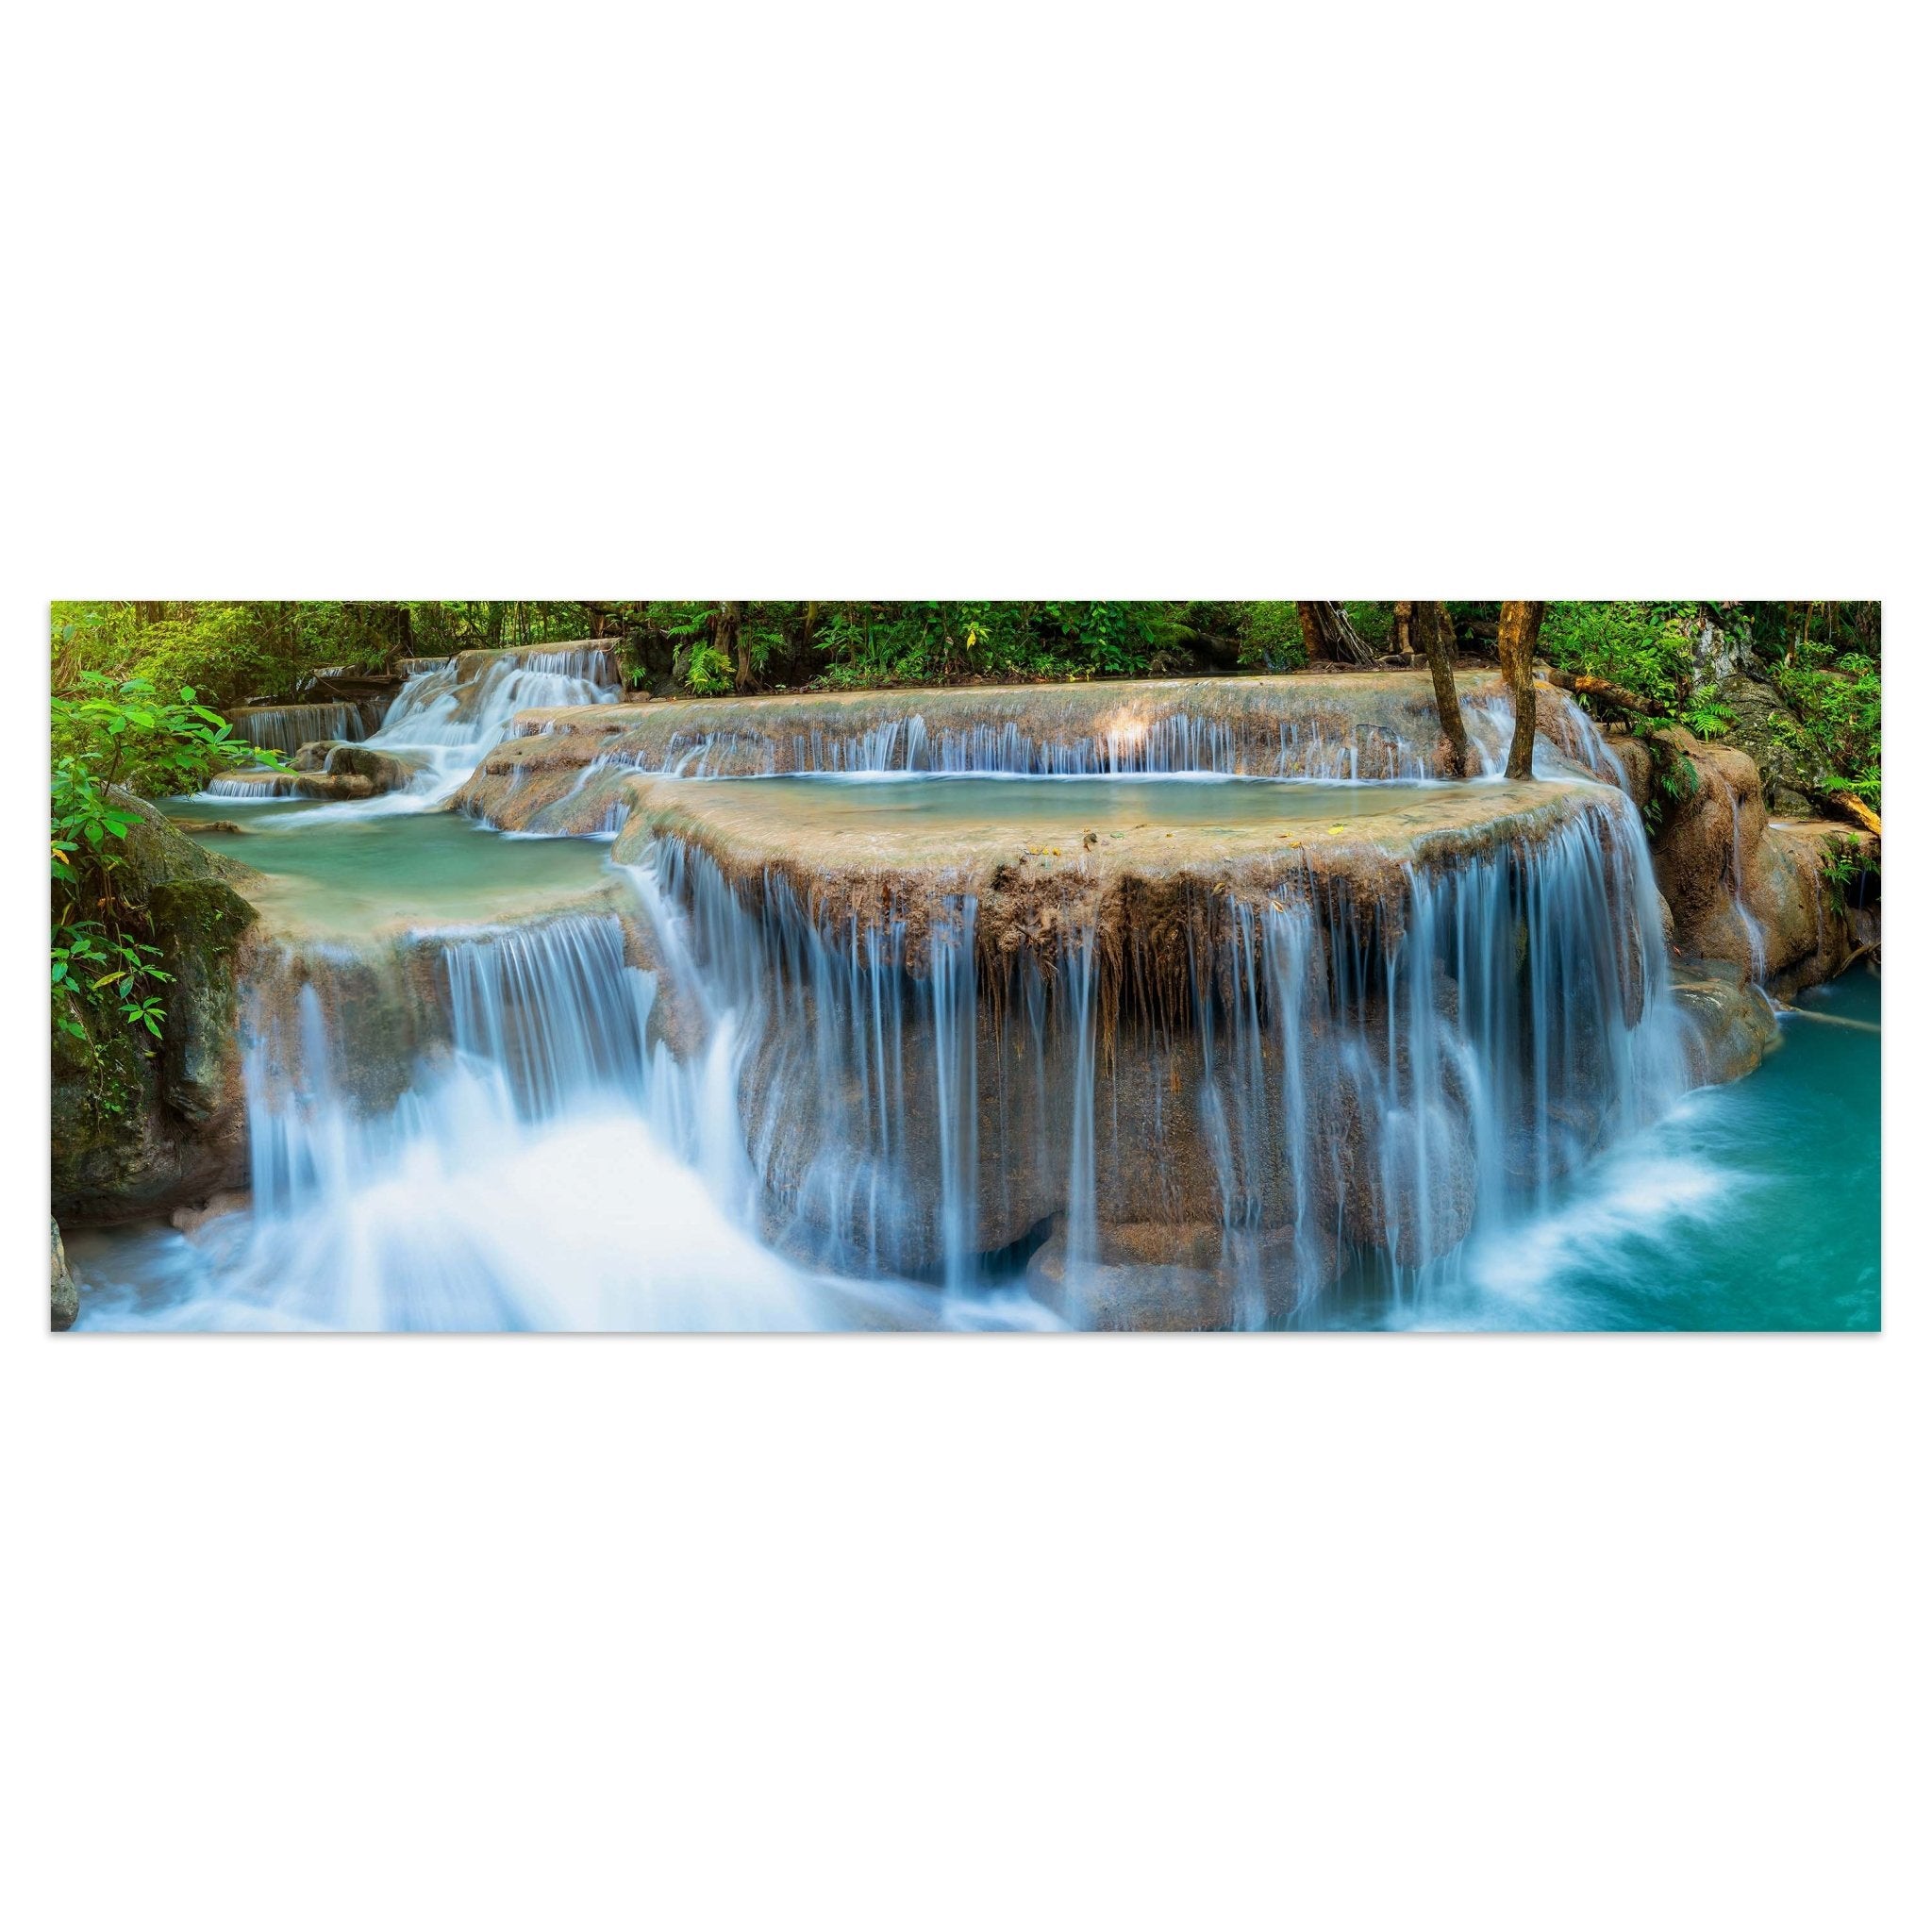 Leinwandbild Wasserfall im Dschungel, Urwald, Wasser M1080 kaufen - Bild 1